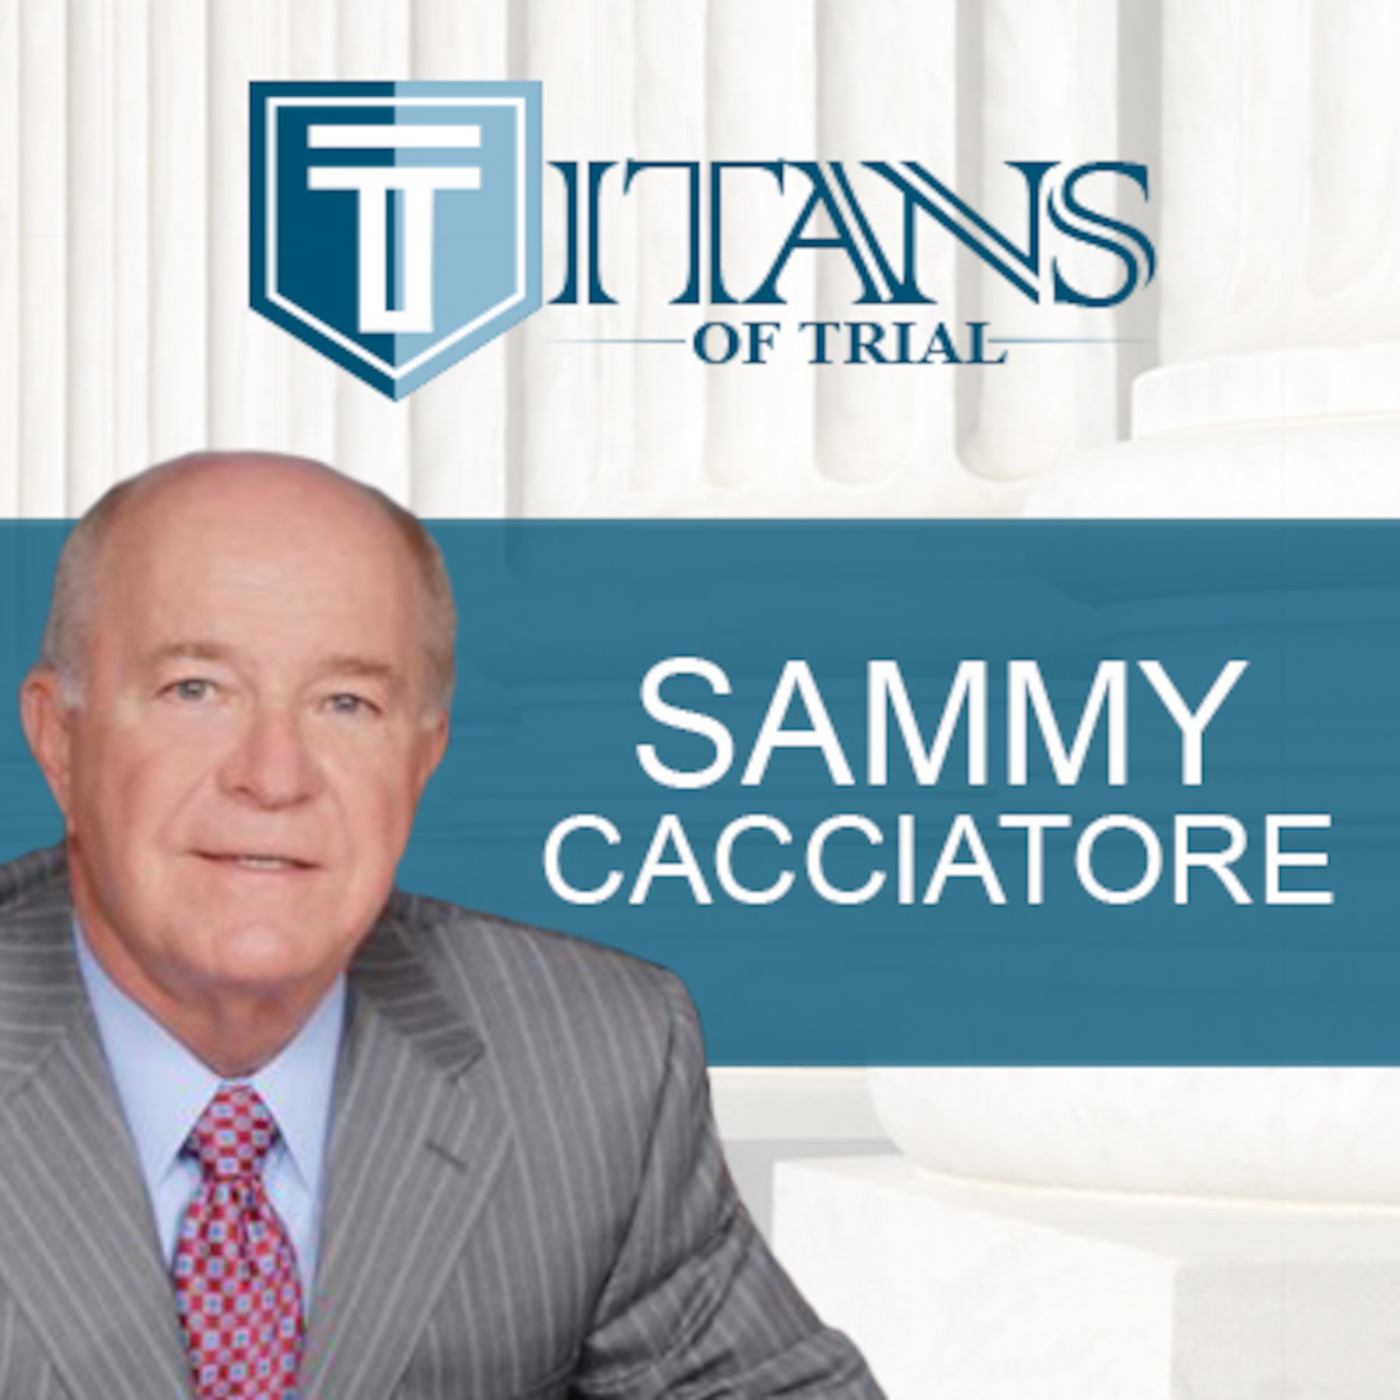 Titans of Trial - Sammy Cacciatore